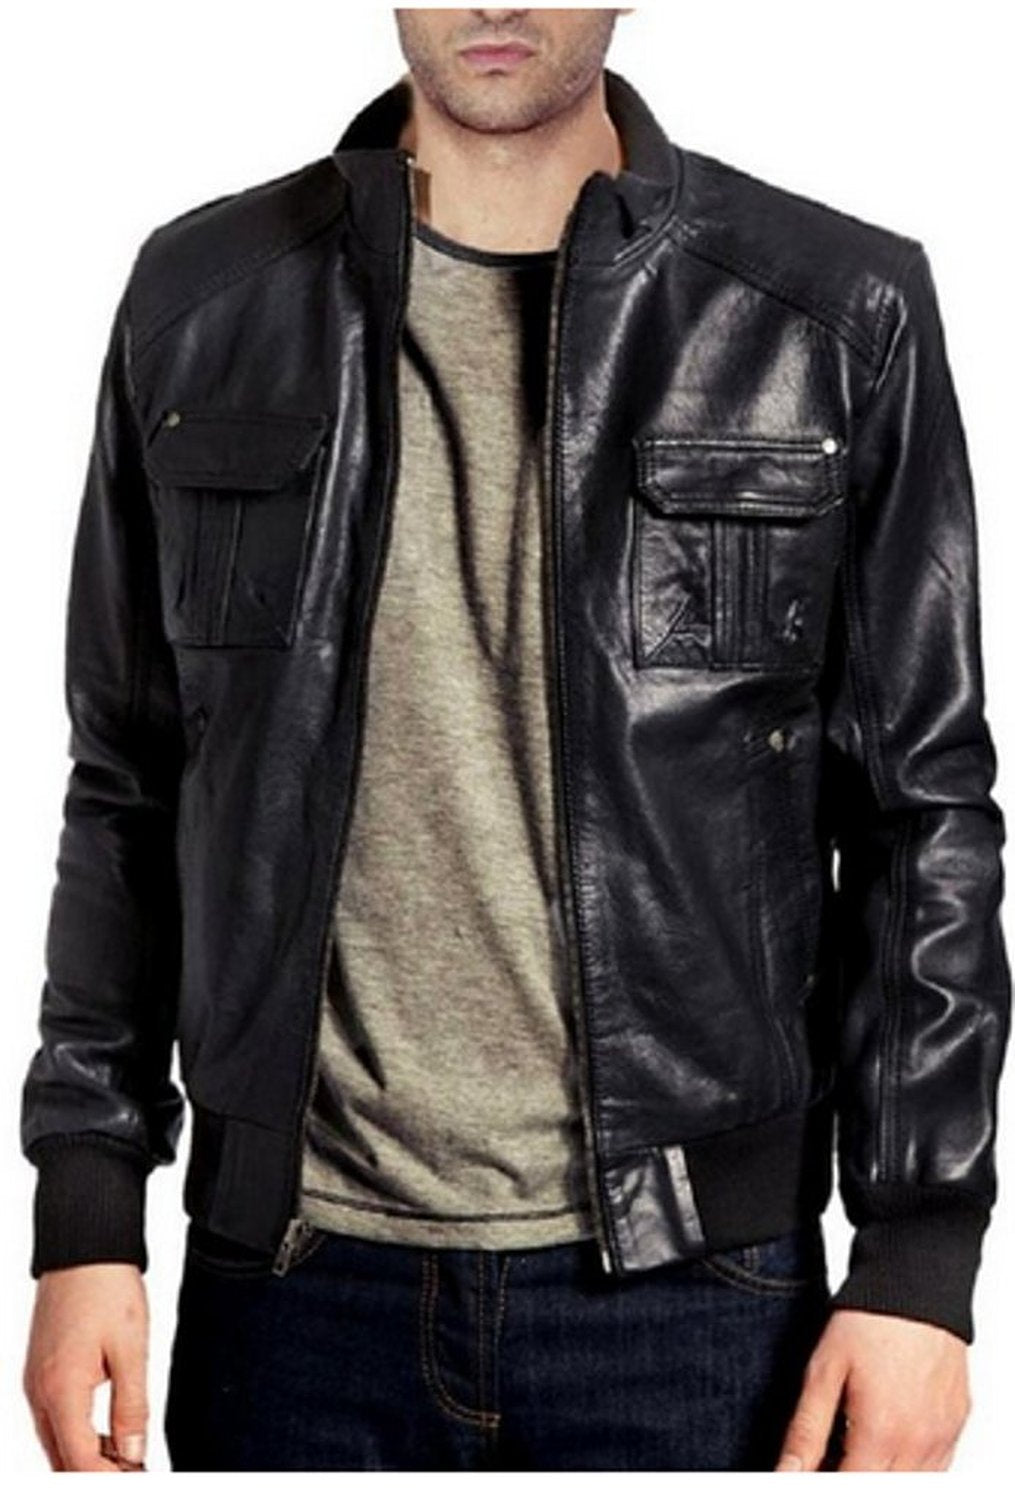 Leather Jackets Hub Mens Genuine Lambskin Leather Jacket (Black, Bomber Jacket) - 1501054